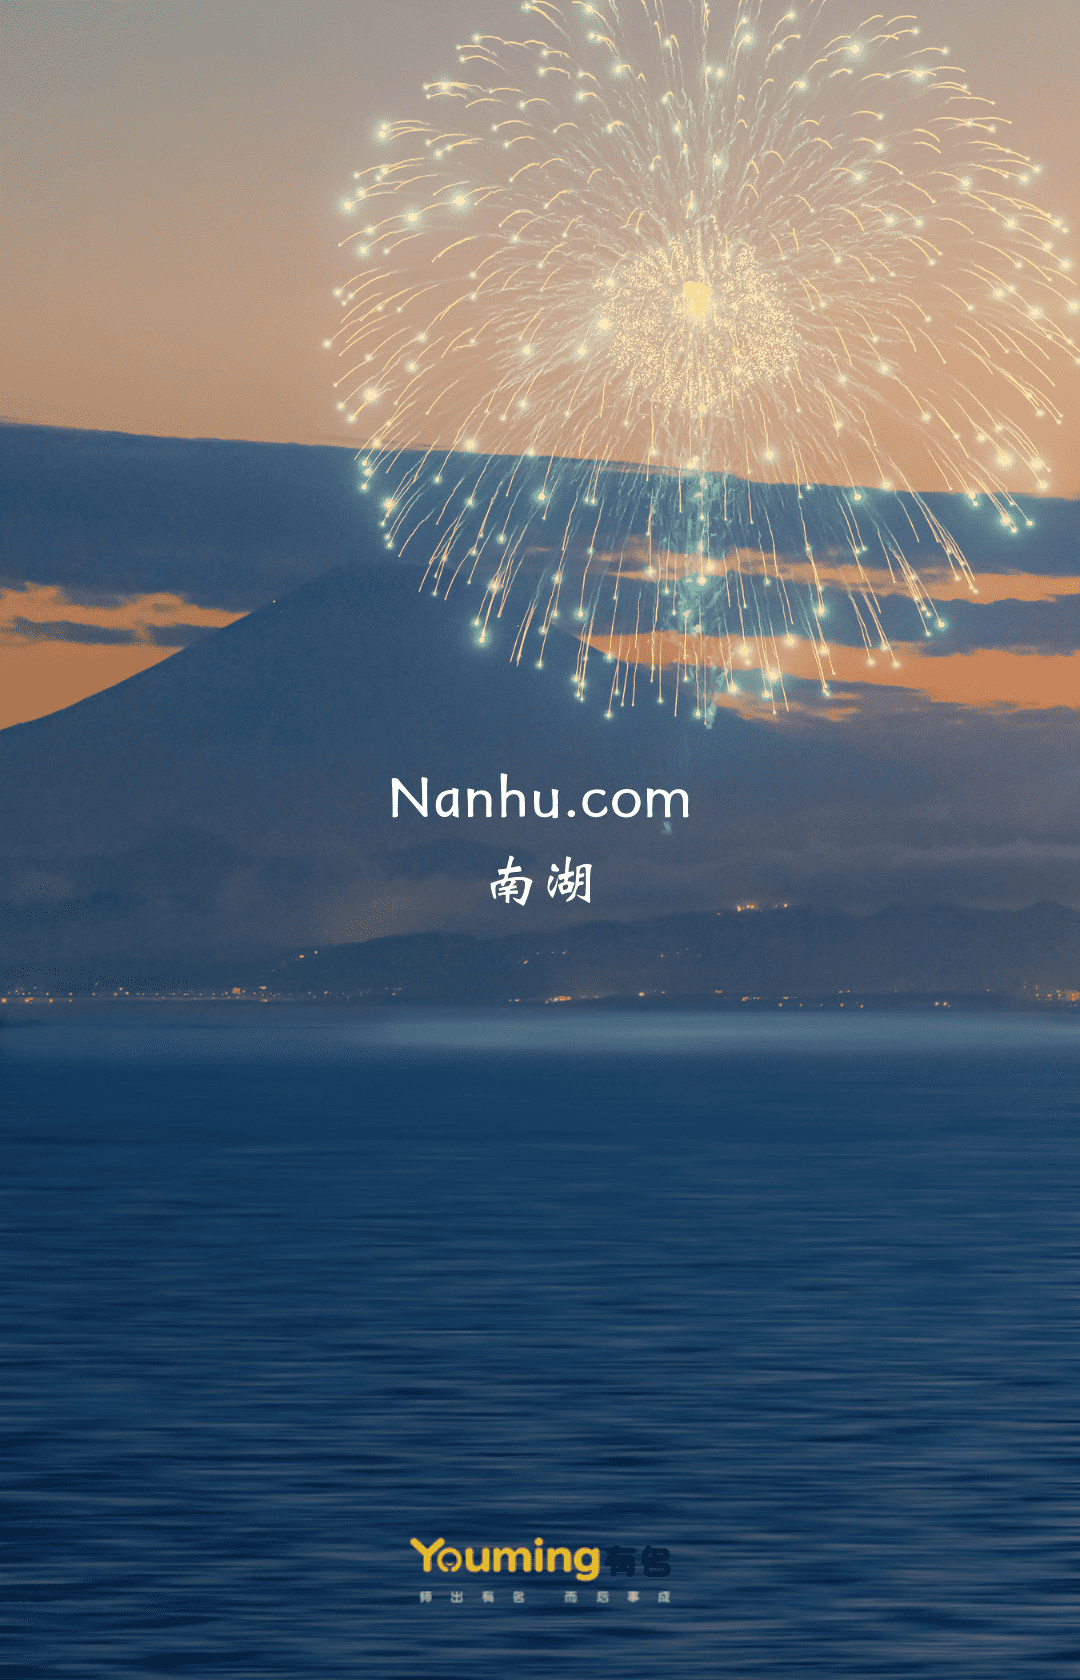 Nanhu.com